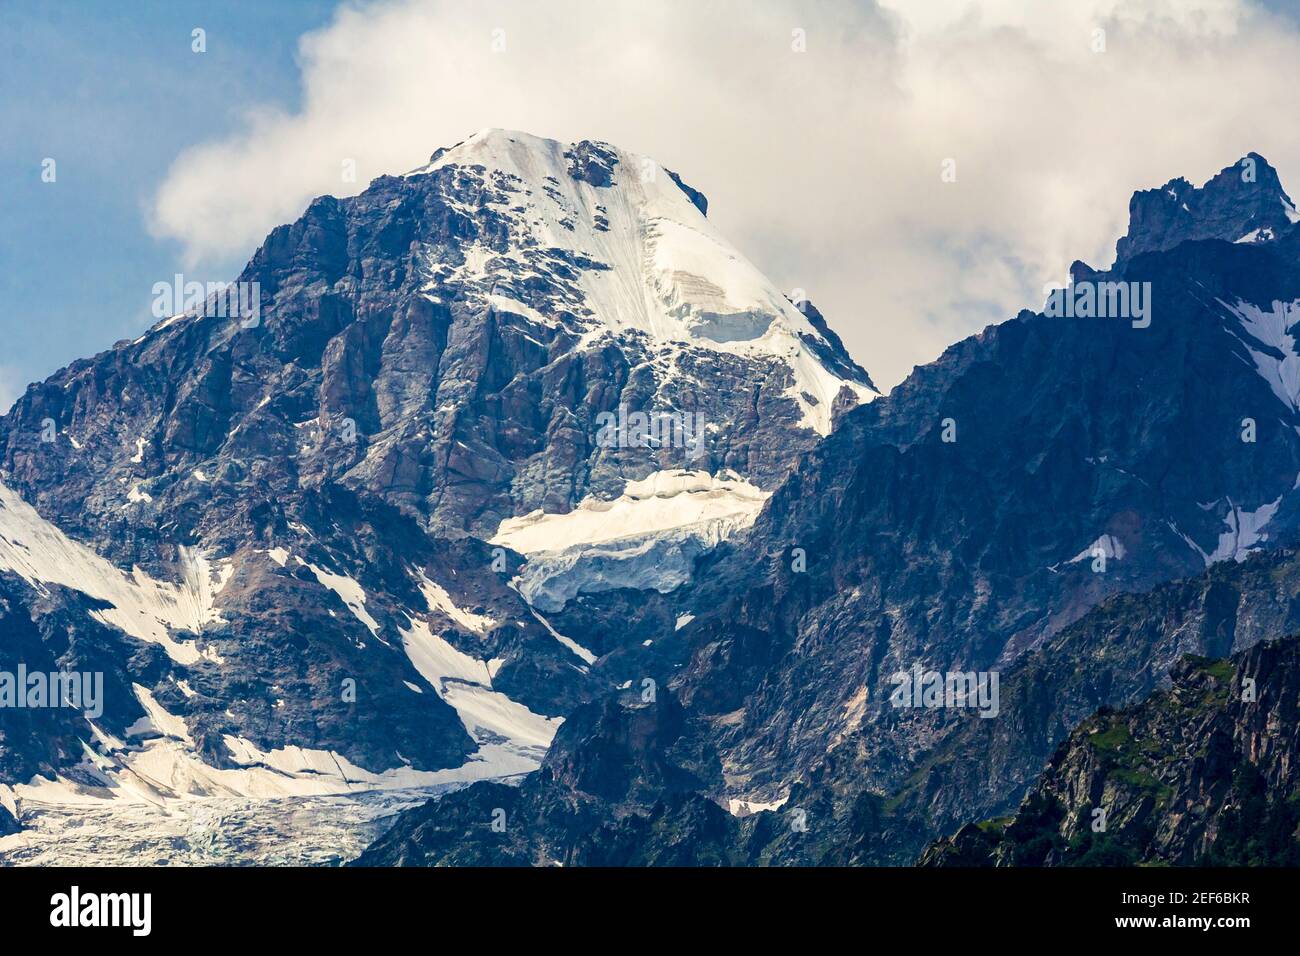 Die Kaukasusberge, ein Gletscher auf den Felsen, vom Gletscher gibt es drei Wasserfälle. Eine tolle faszinierende Landschaft. Stockfoto